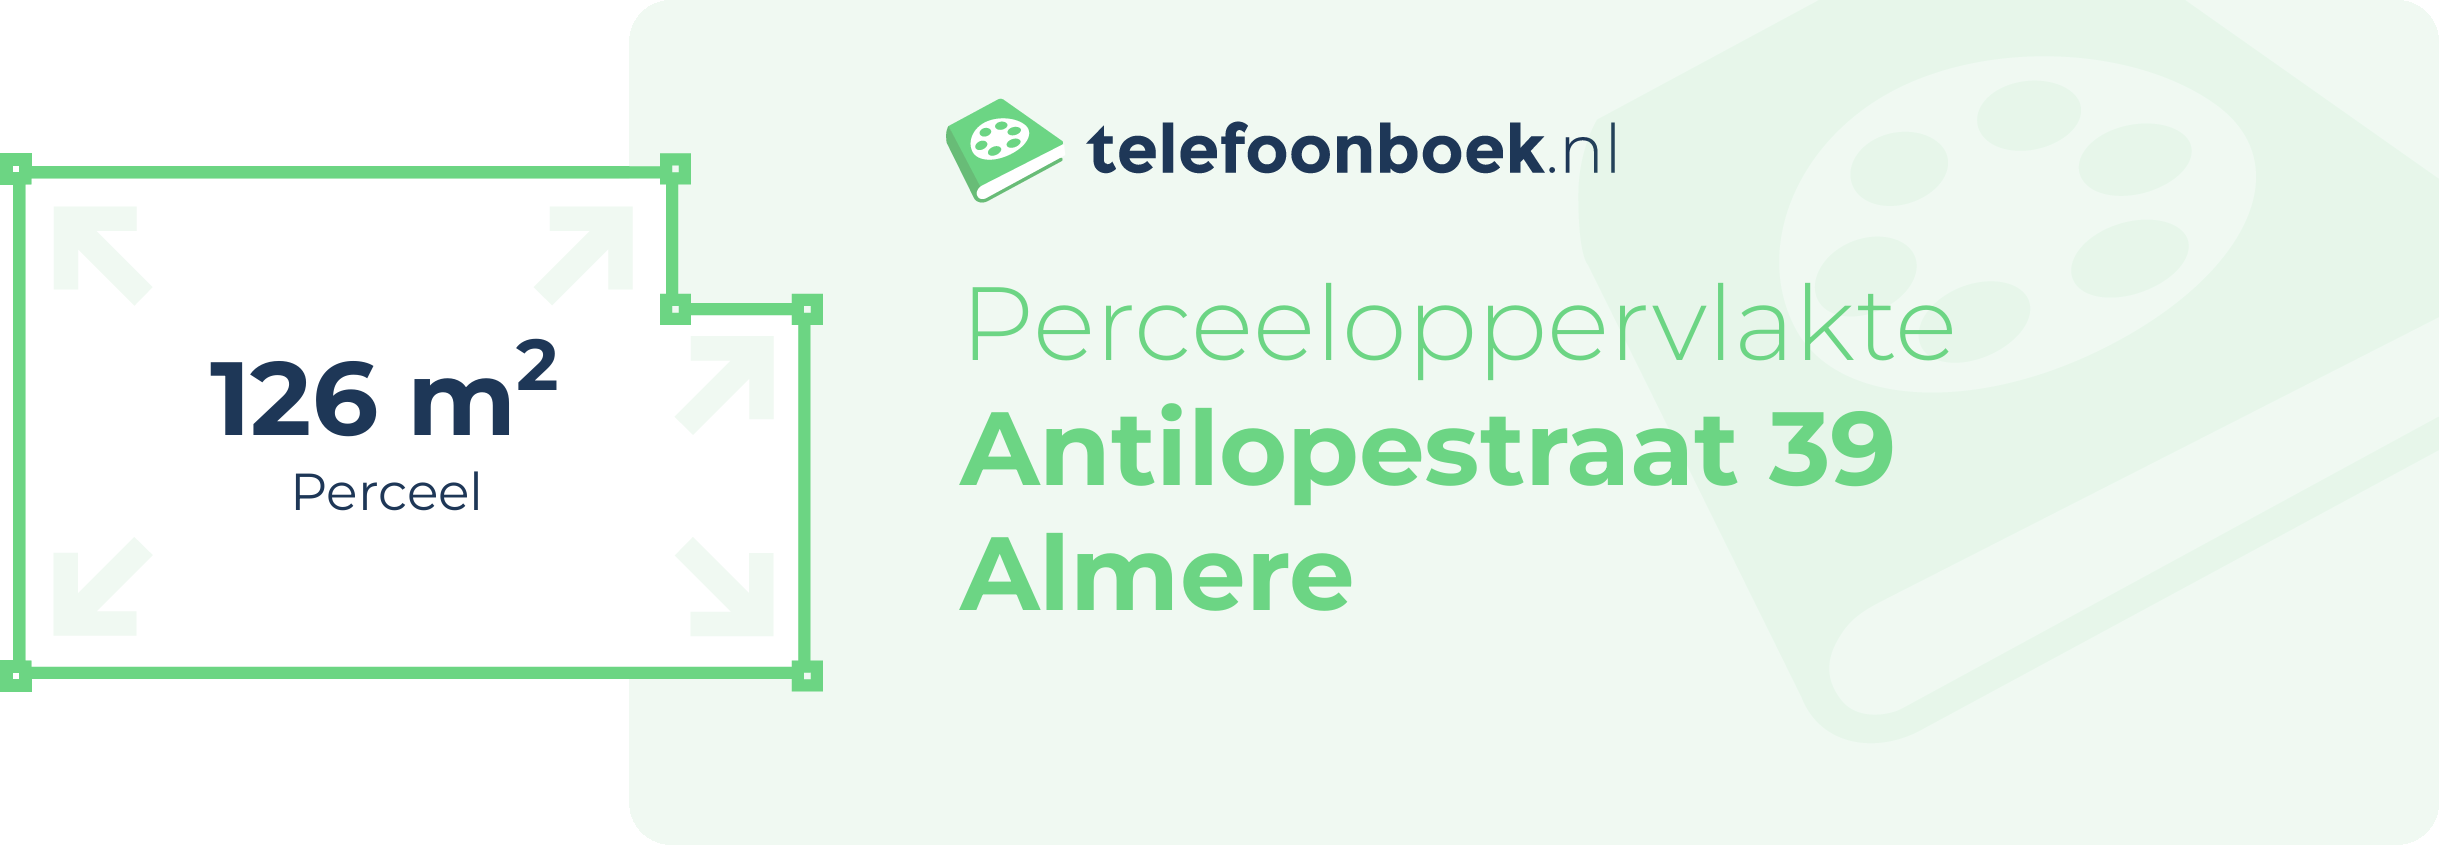 Perceeloppervlakte Antilopestraat 39 Almere